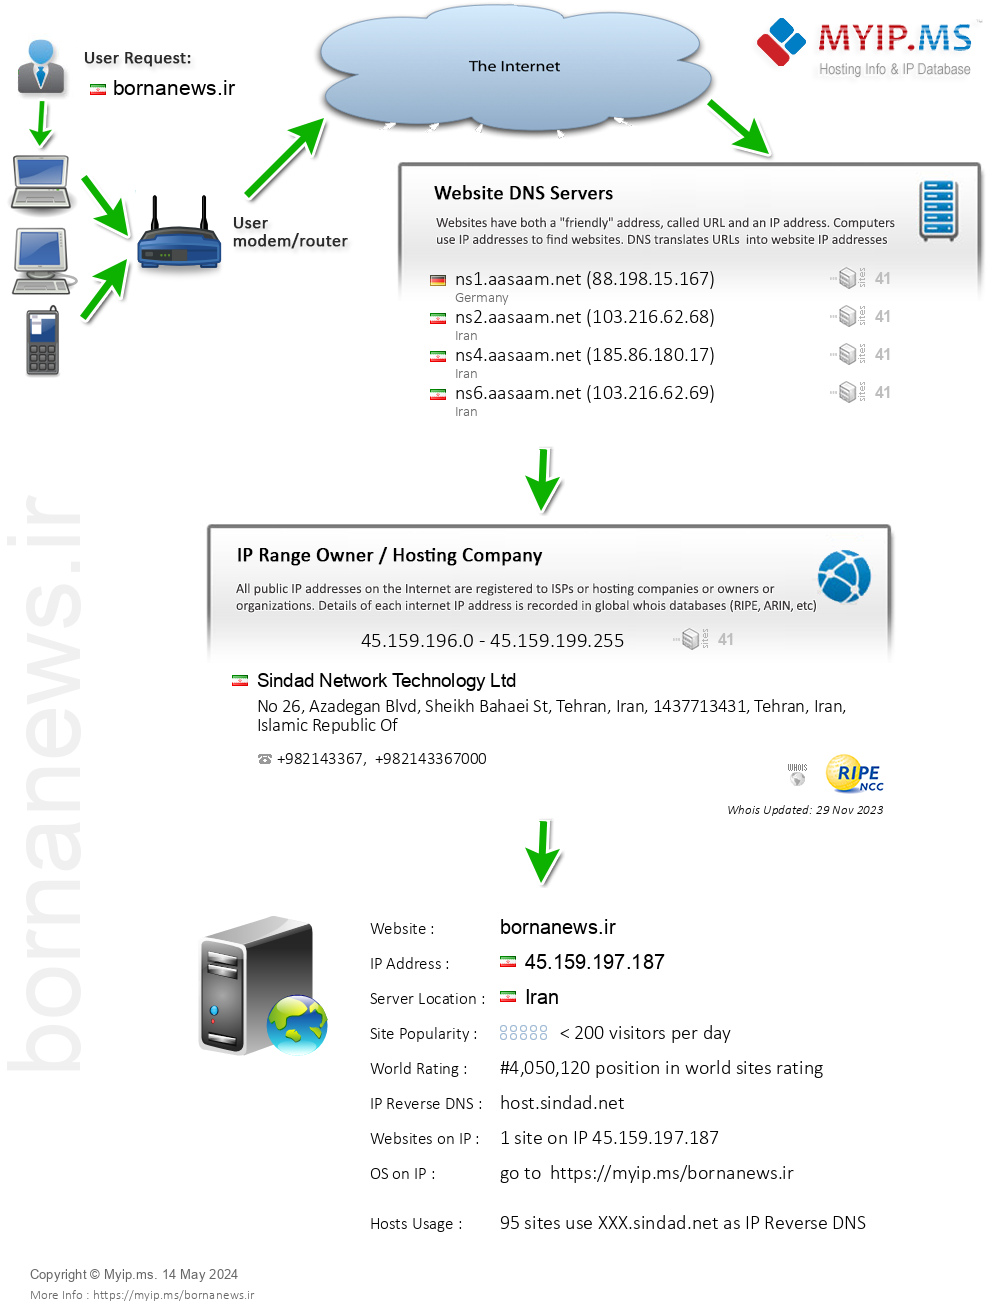 Bornanews.ir - Website Hosting Visual IP Diagram